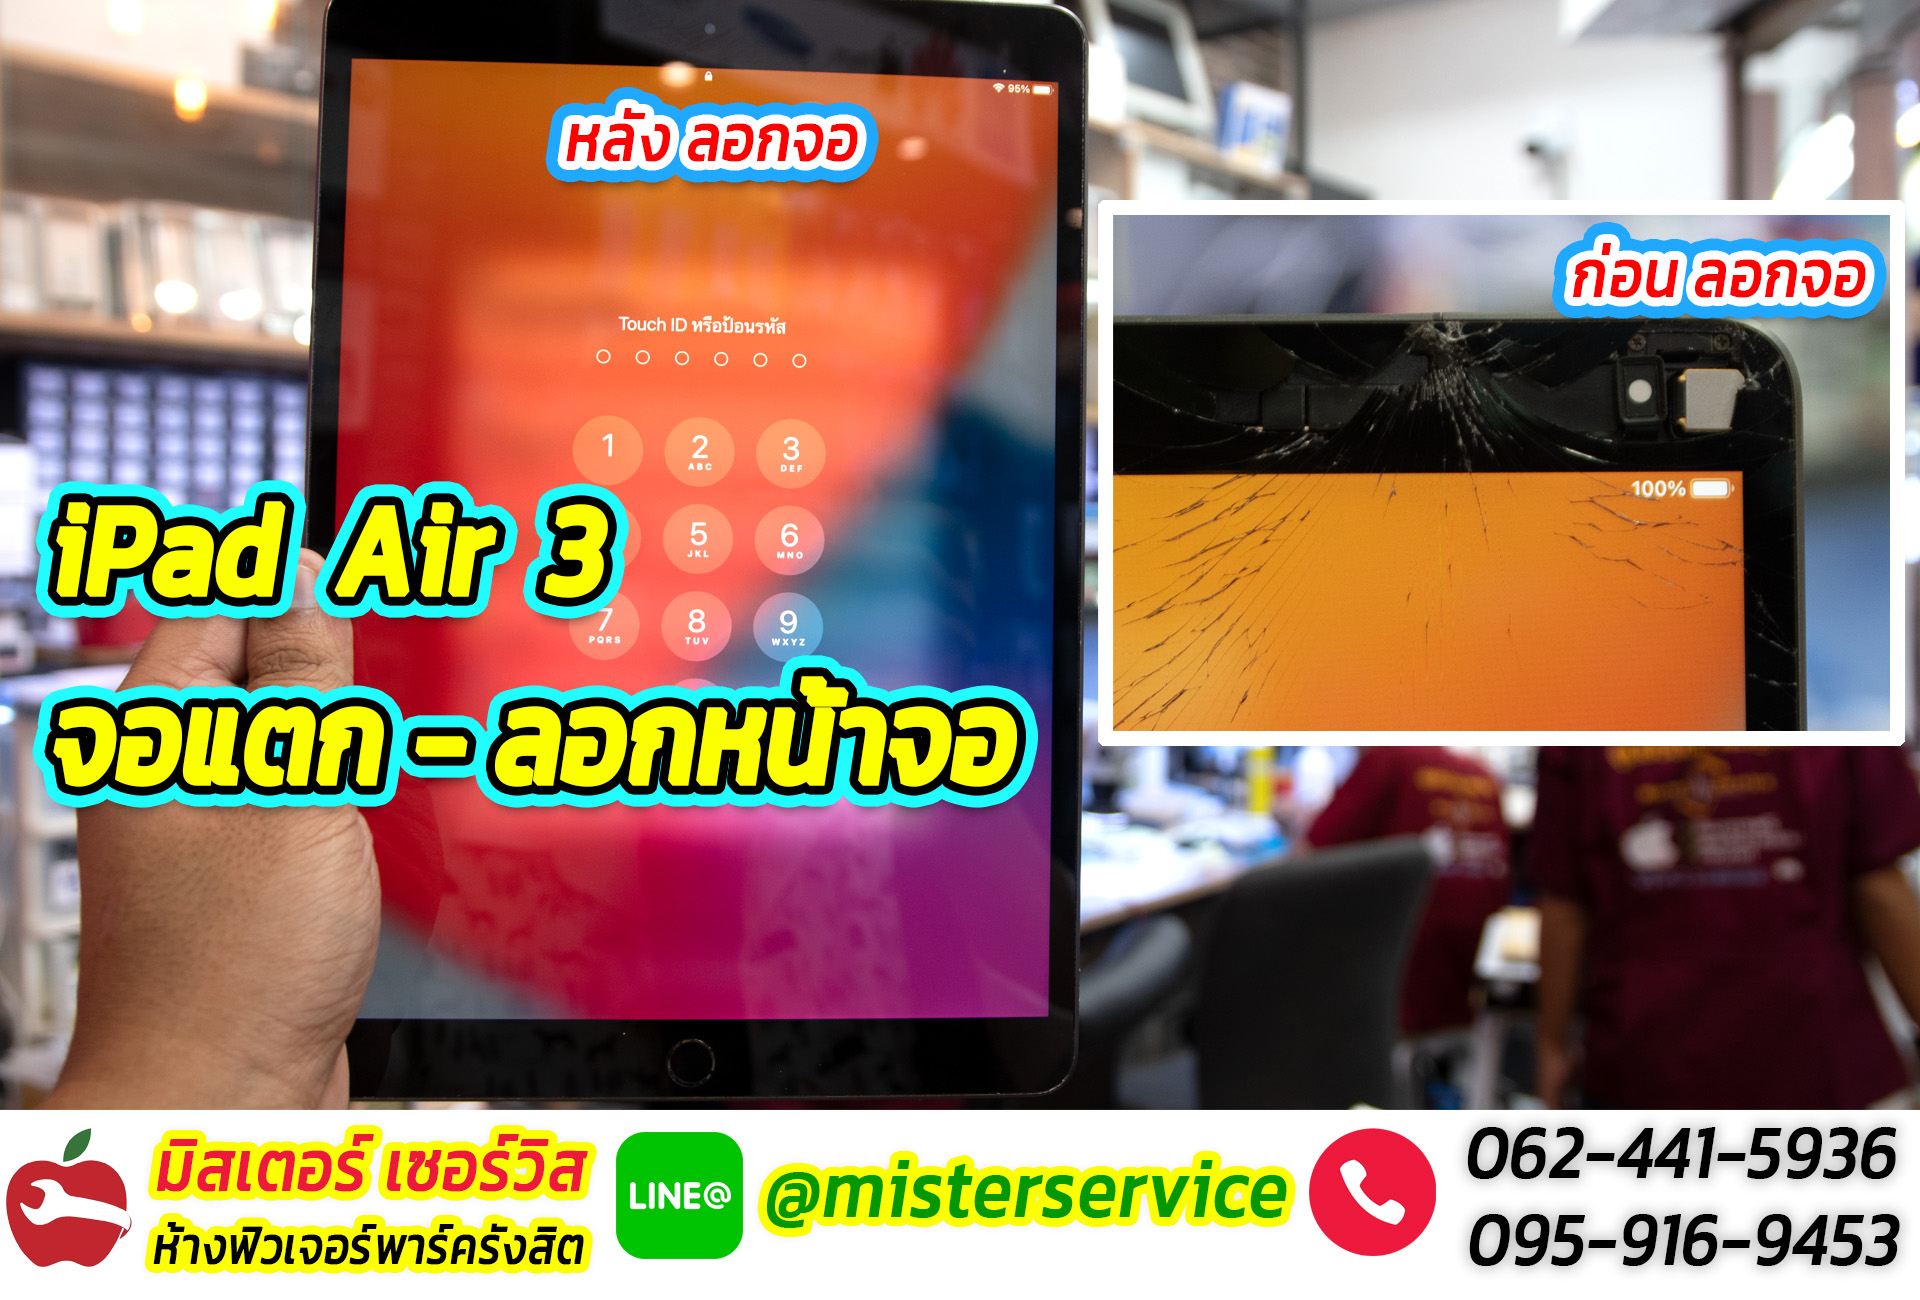 ลอกหน้าจอไอแพดแอร์3 iPad Air 3 สุขุมวิท กรุงเทพมหานคร